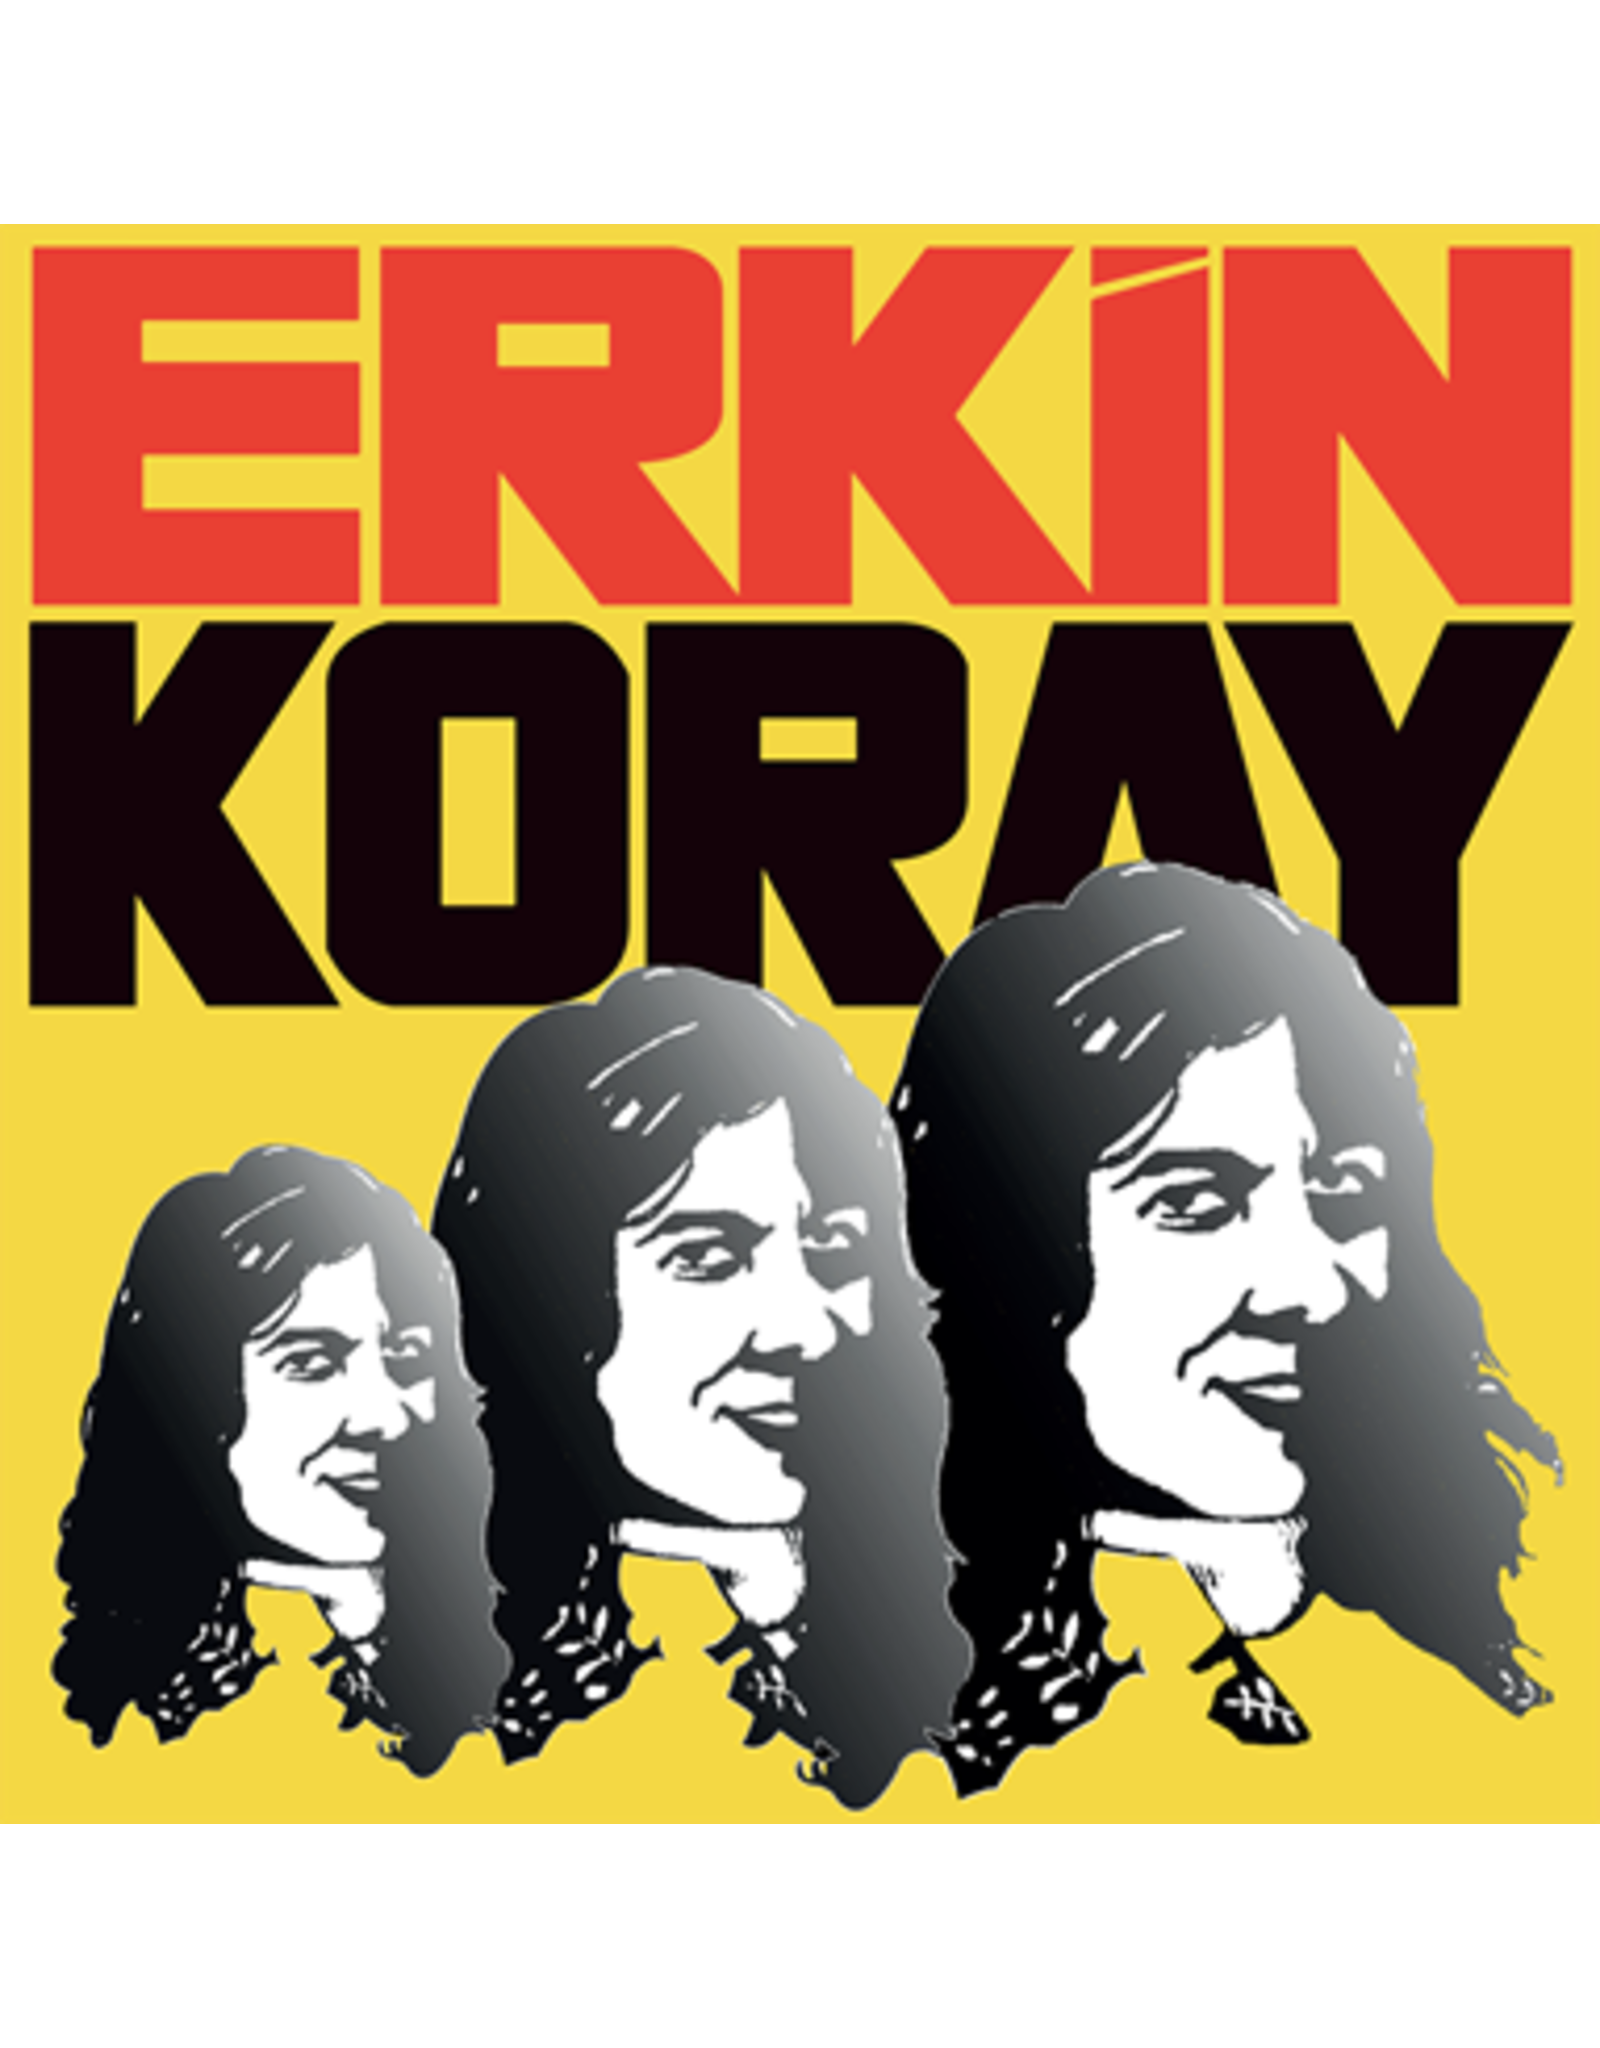 Koray, Erkin: Erkin Koray LP